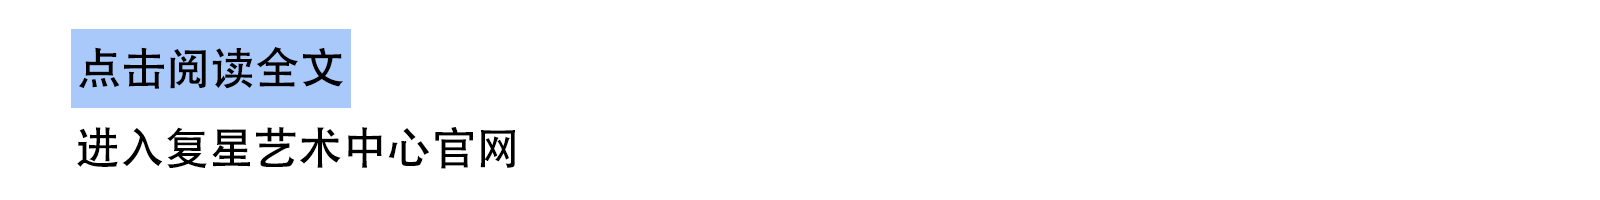 🧧有龙则灵！复星艺术中心新年红包封面限量放送  上海复星艺术中心 红包 封面 新年 复星艺术中心 下方 龙年 复星 Looong 崇真艺客